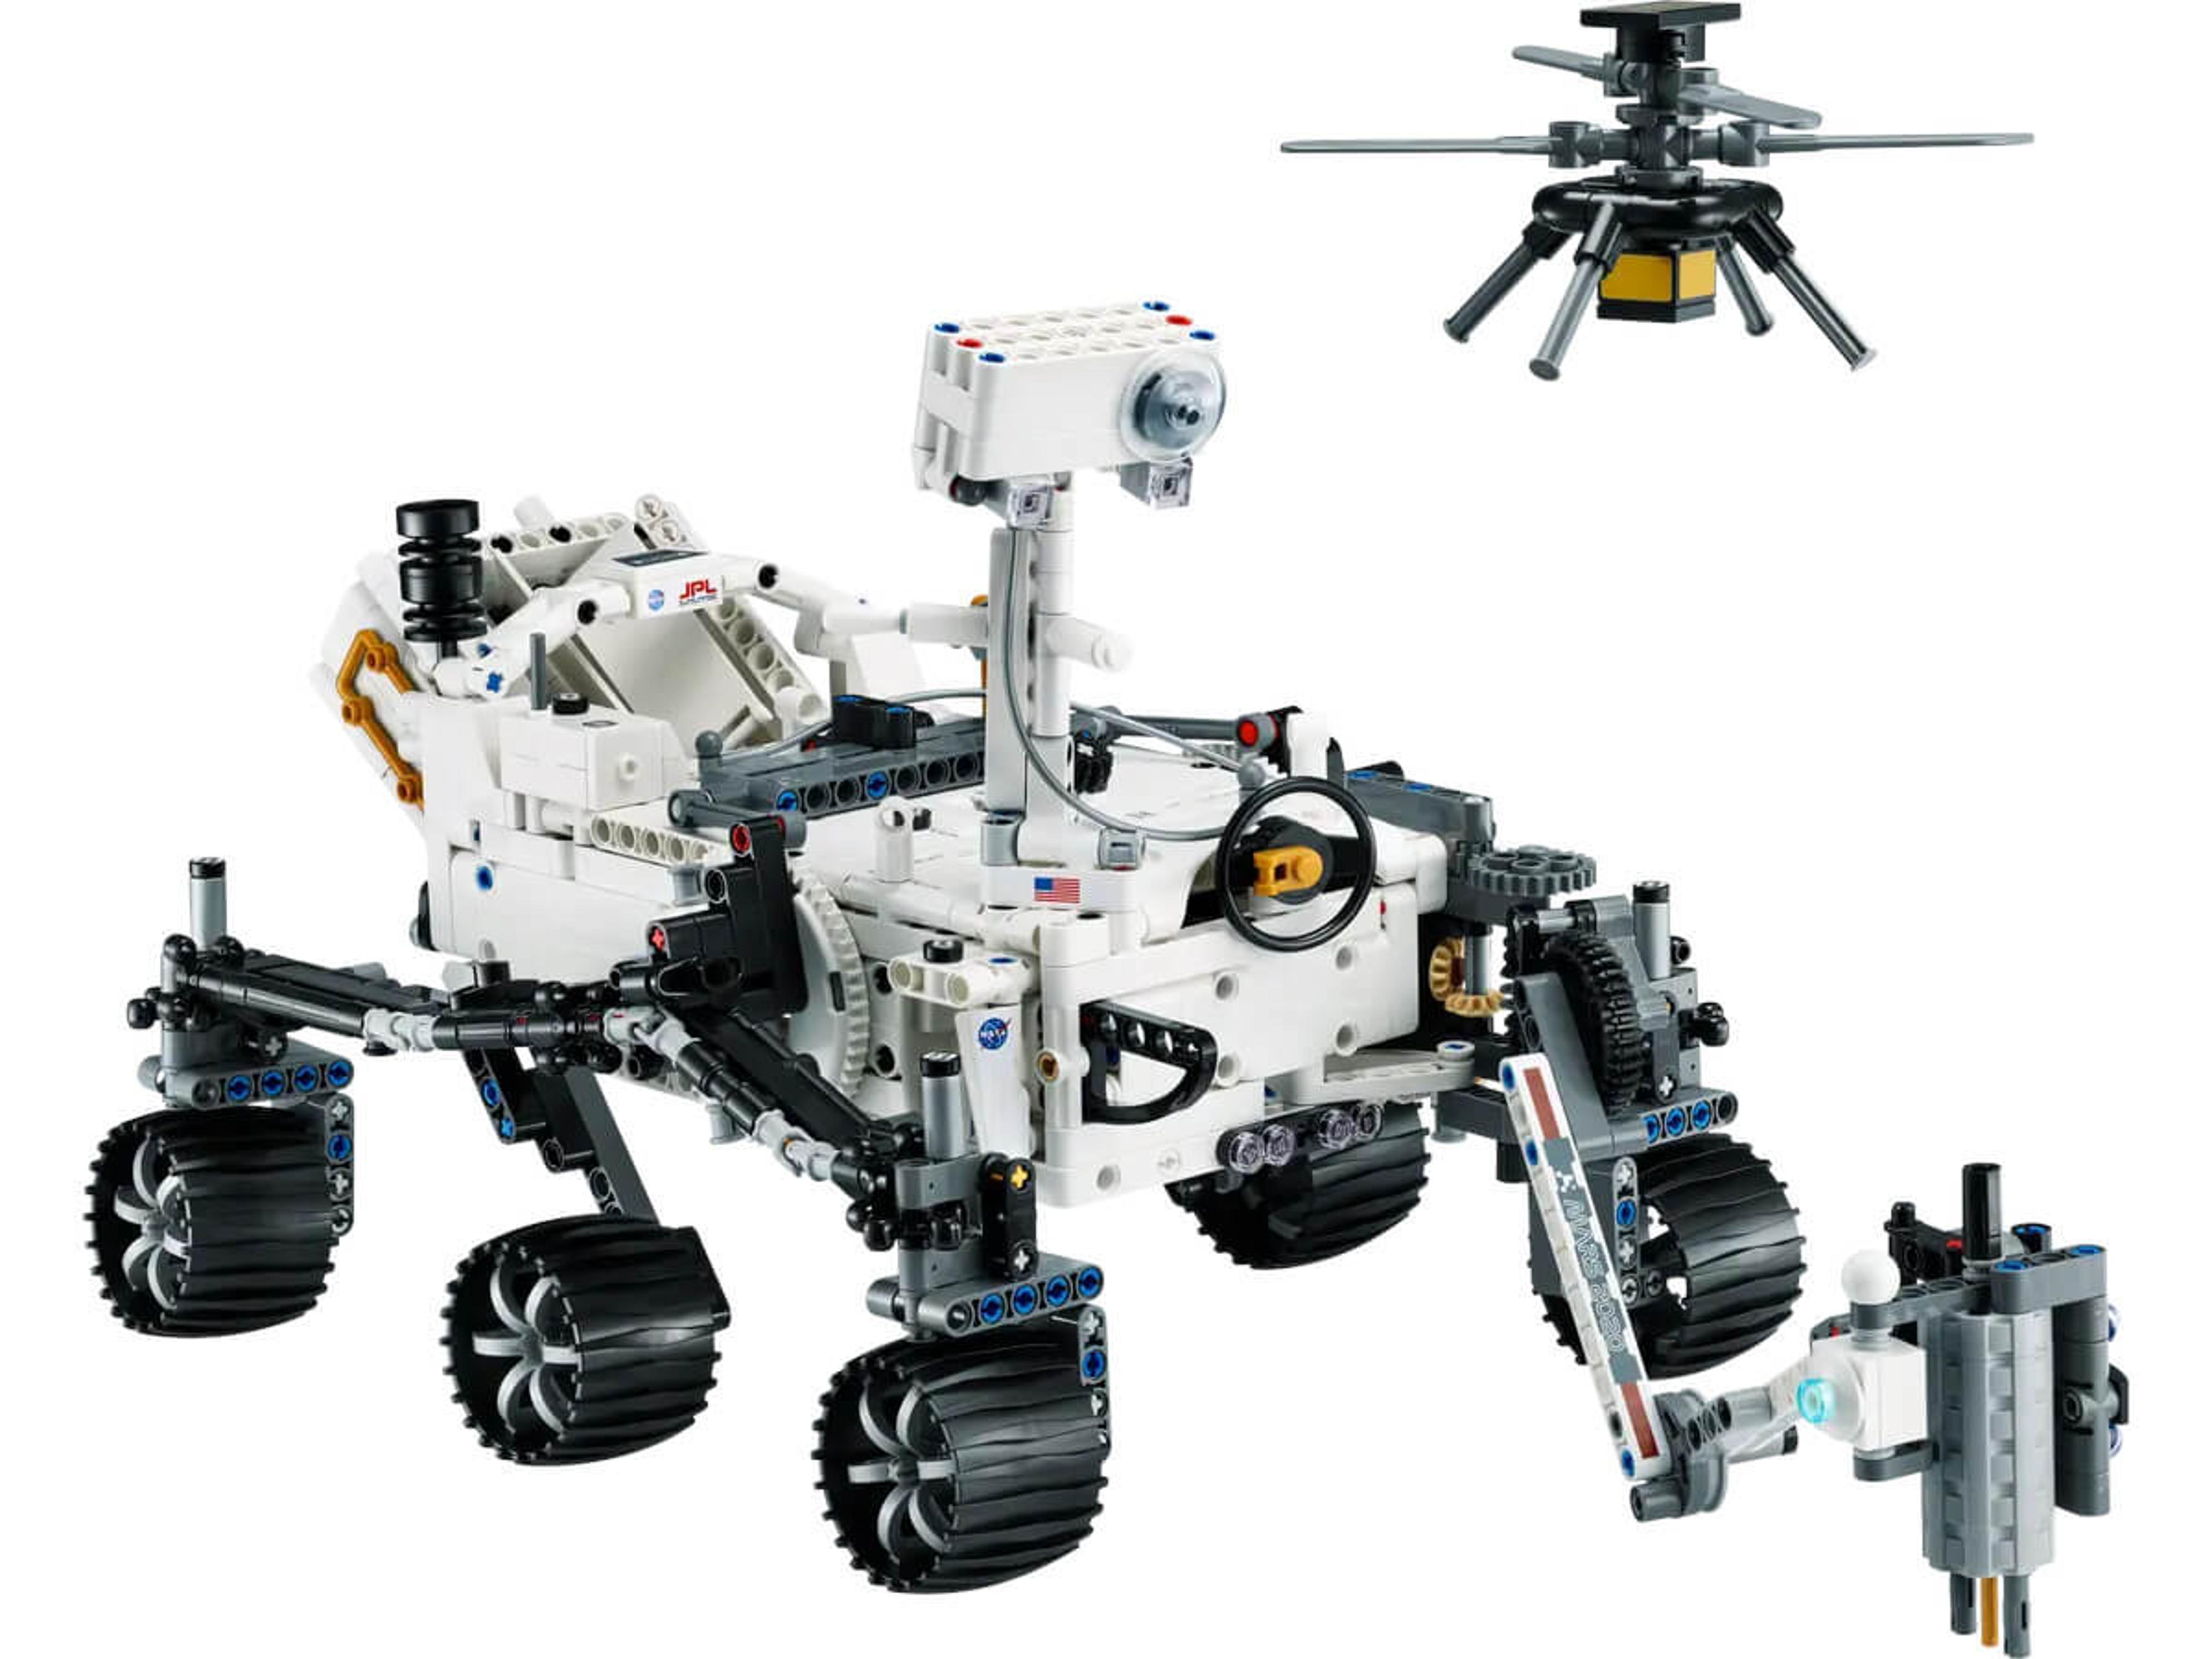 LEGO Technic - NASA Mars Rover Perseverance